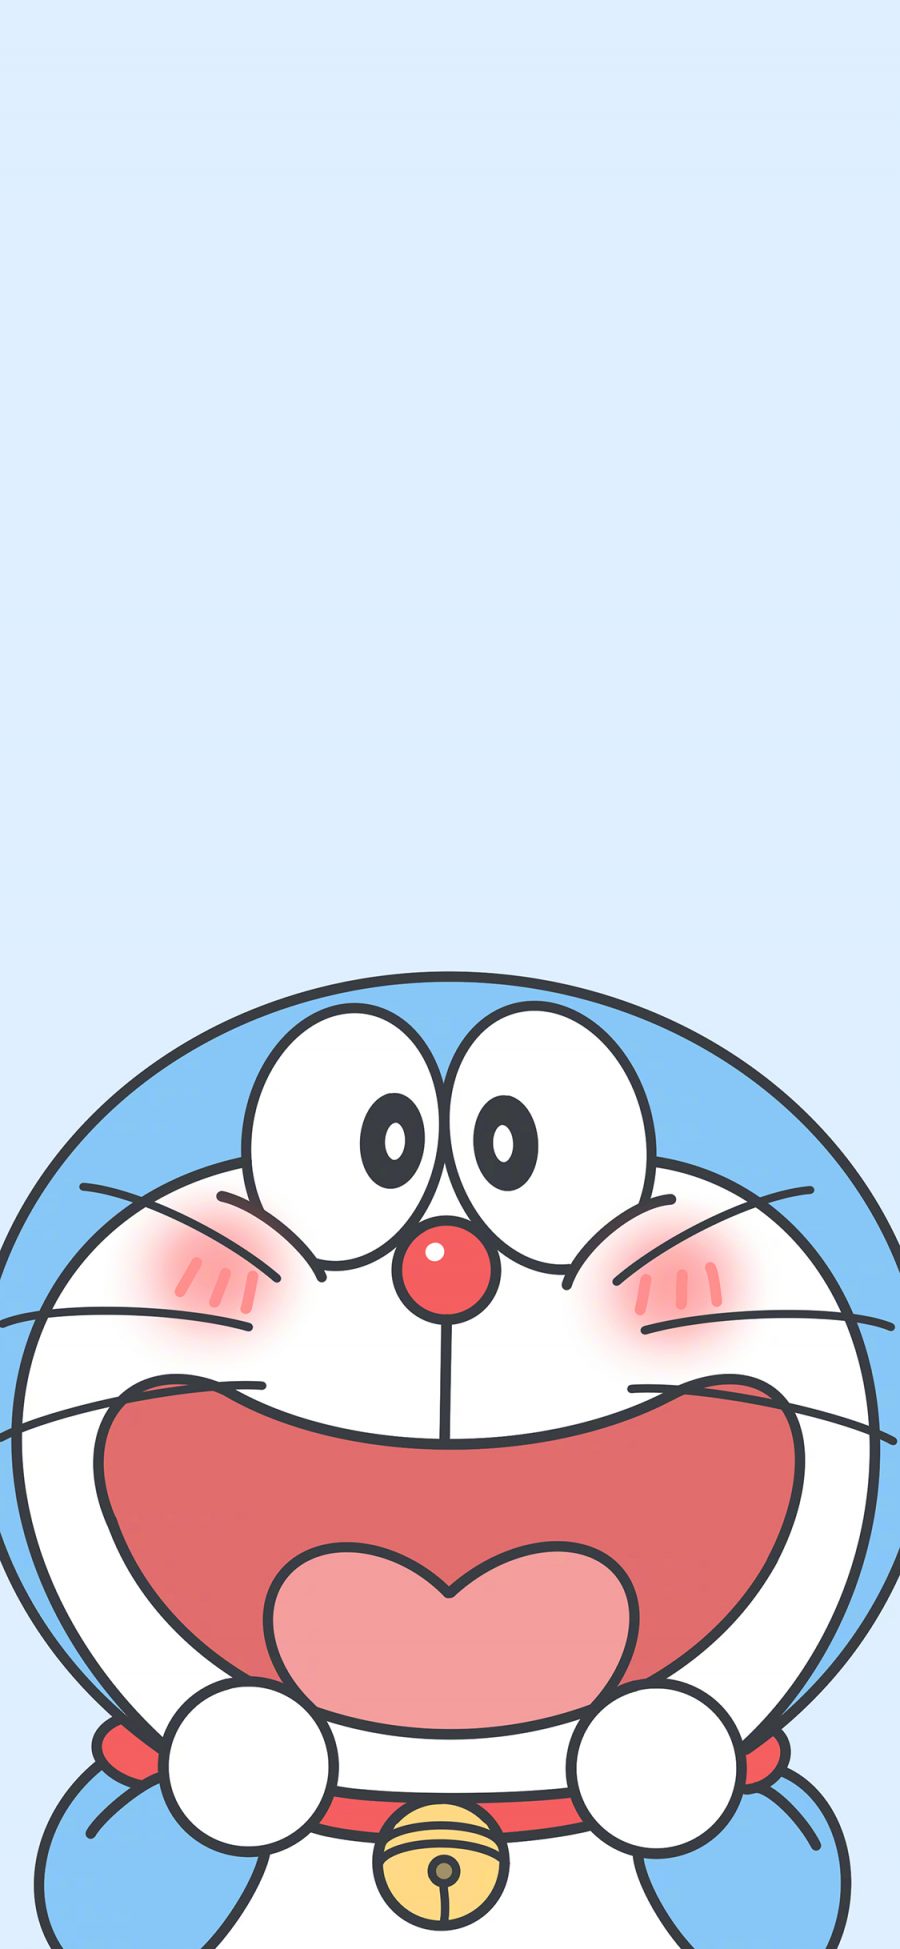 [2436×1125]哆啦A梦 鬼脸 叮当猫 脸红 苹果手机动漫壁纸图片